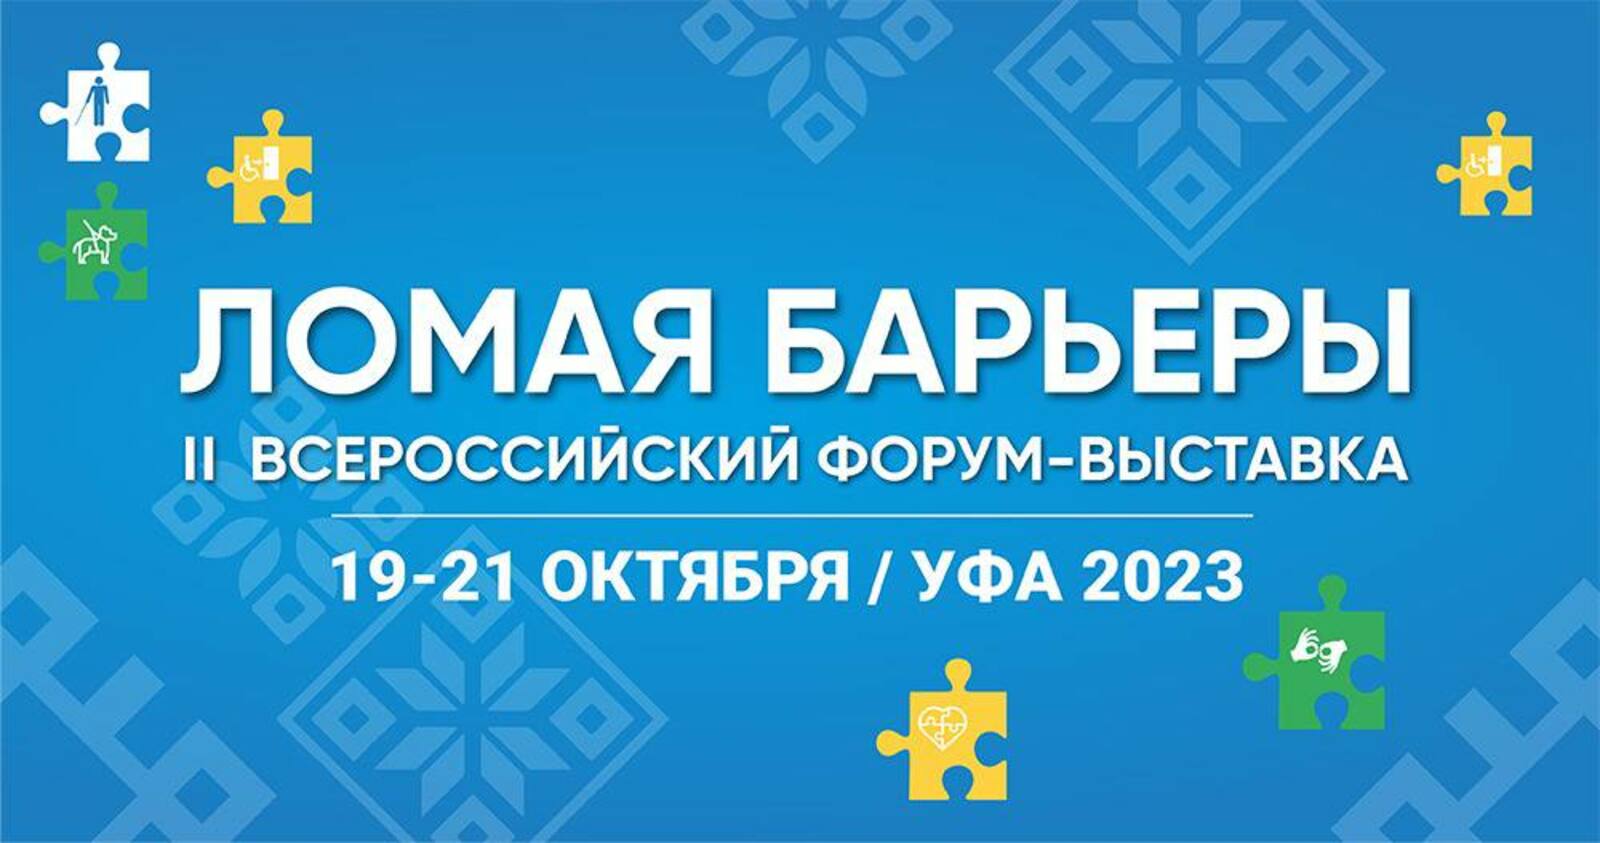 II Всероссийский форум-выставка «Ломая барьеры»